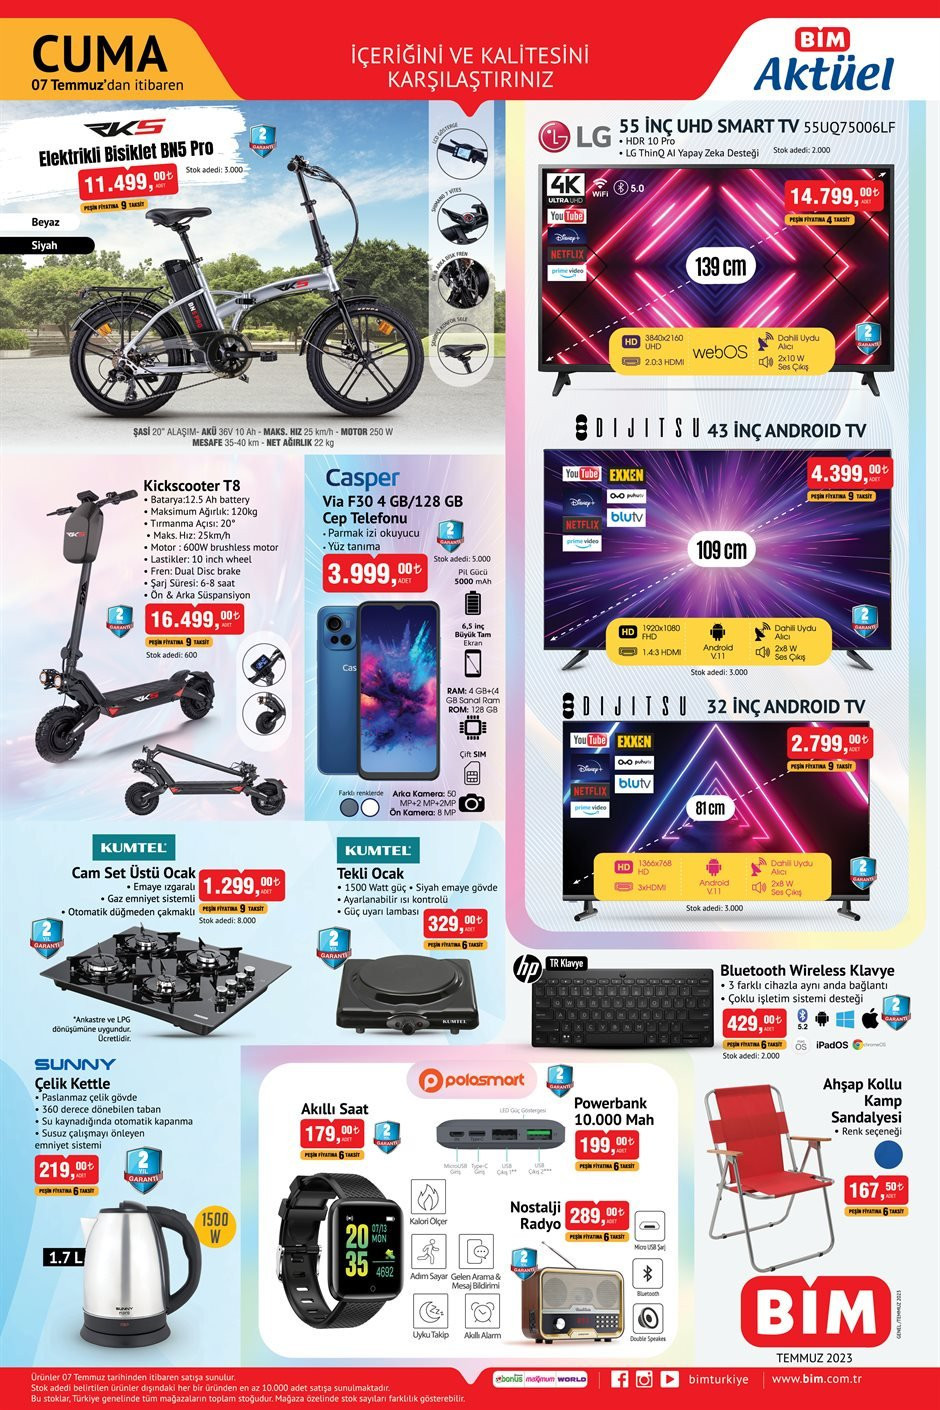 BİM 7-10 Temmuz aktüel ürünler kataloğu yayınlandı: BİM'de fiyatlar inişe geçti 32 inç androıd tv 2.799 TL, cep telefonu 3.999 TL, elektrikli bisiklet 11.499 TL - Resim : 4